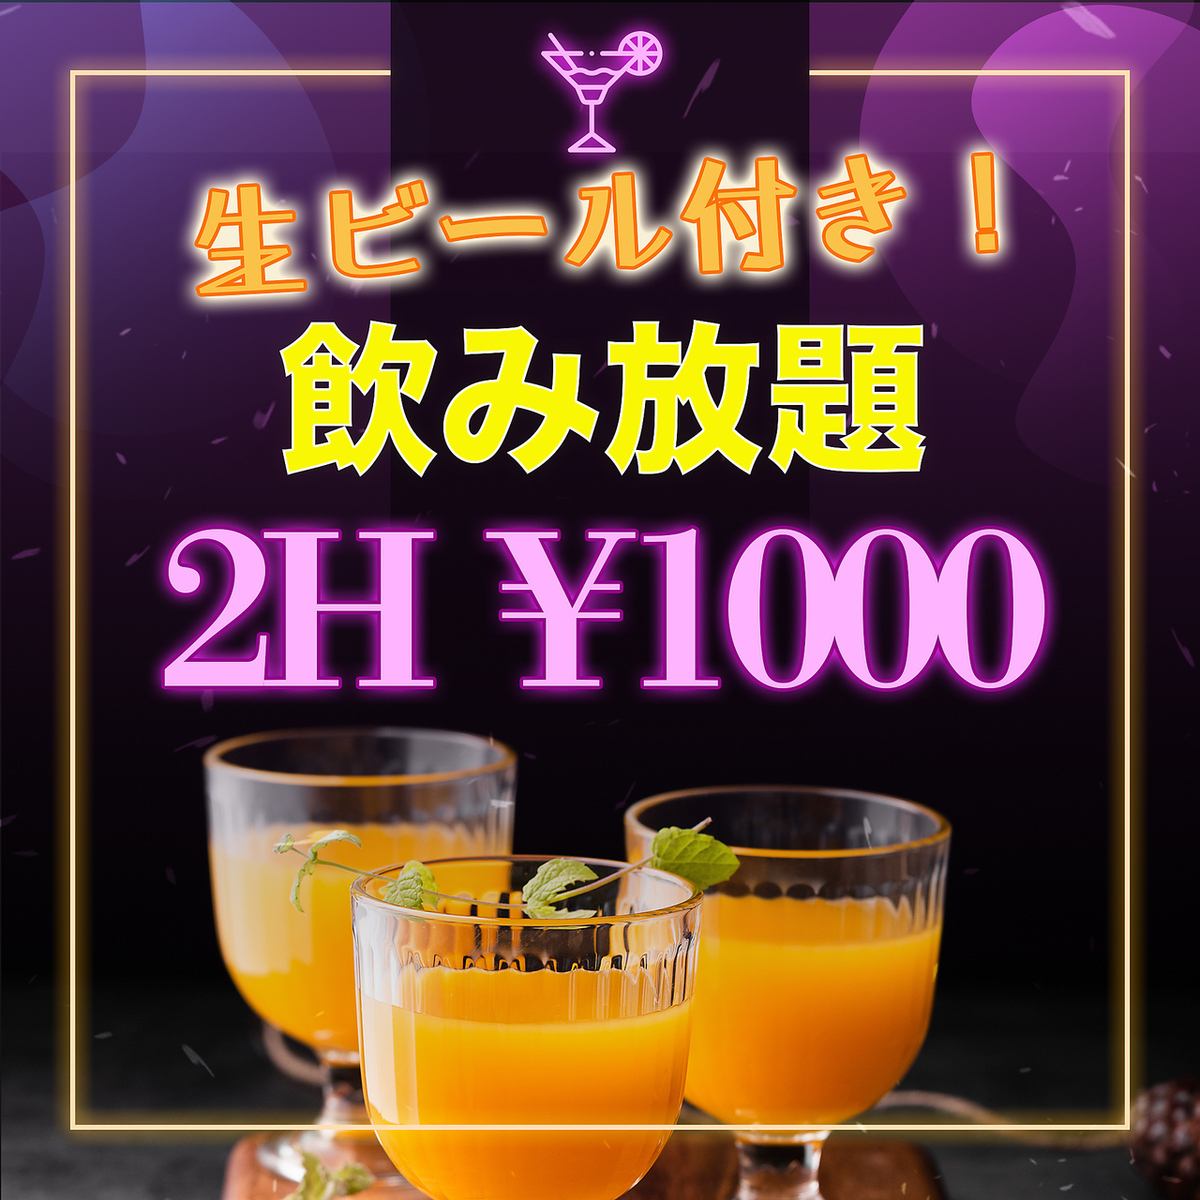 有生啤酒！無限暢飲！無限暢飲 120 分鐘 1000 日元 S 計劃！